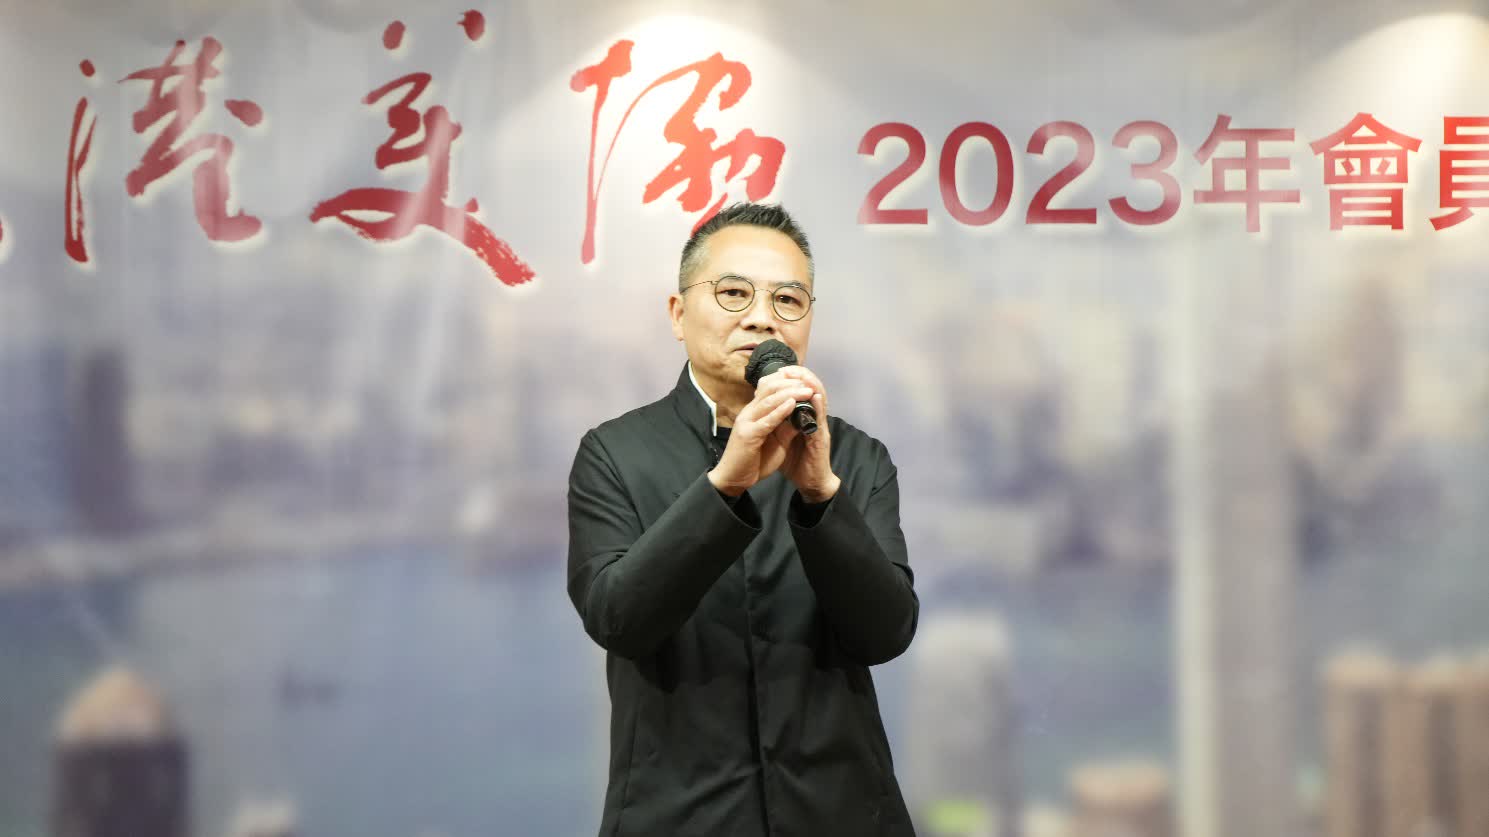 香港美協2023年會員大會暨春茗晚宴今晚舉行